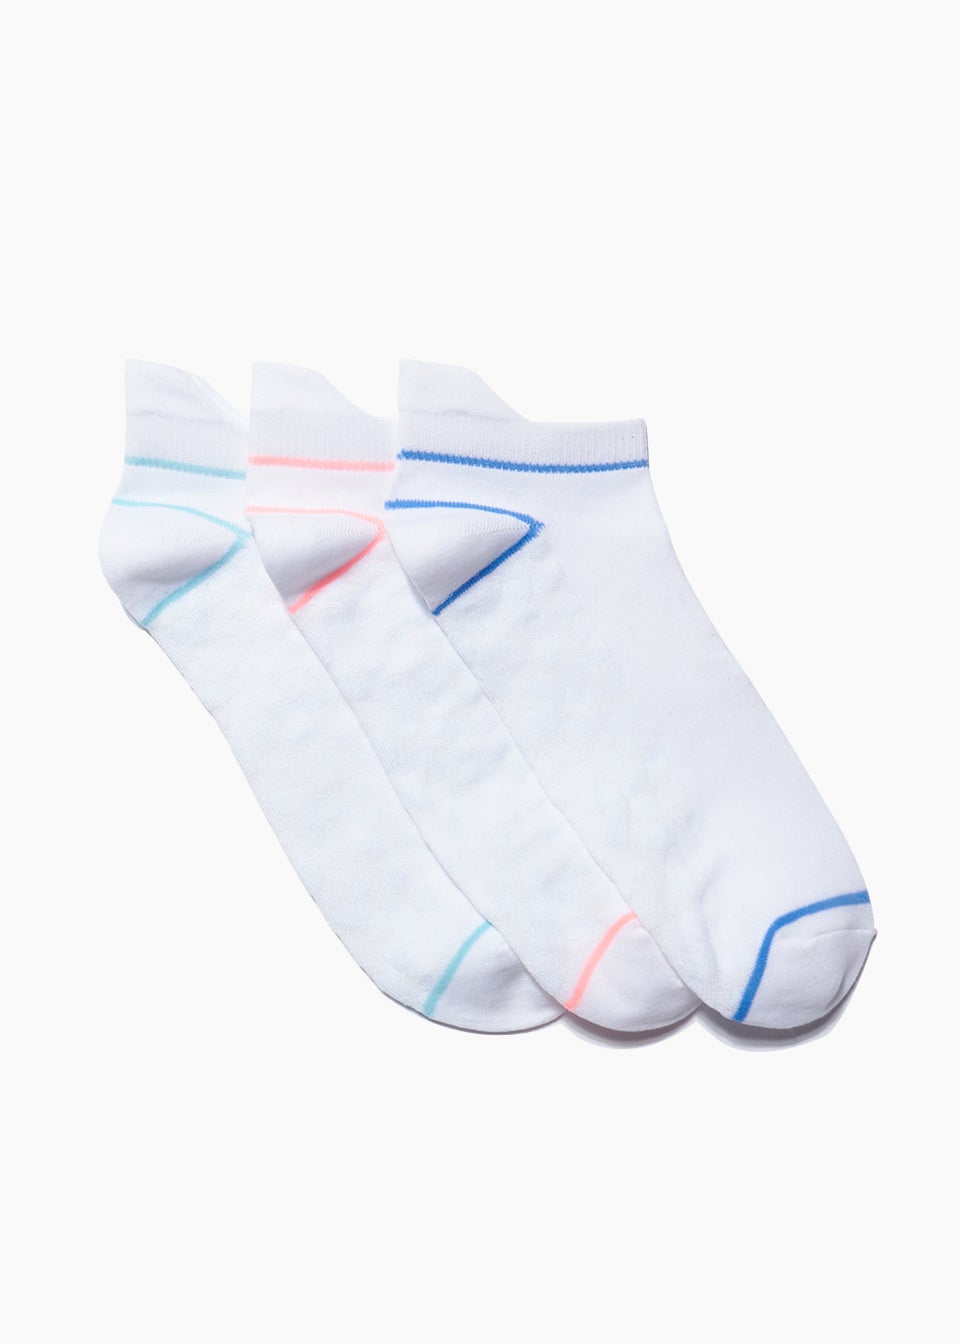 Комплект из 3 спортивных носков, мультиколор комплект носков мужских белых с полосками 3 пары